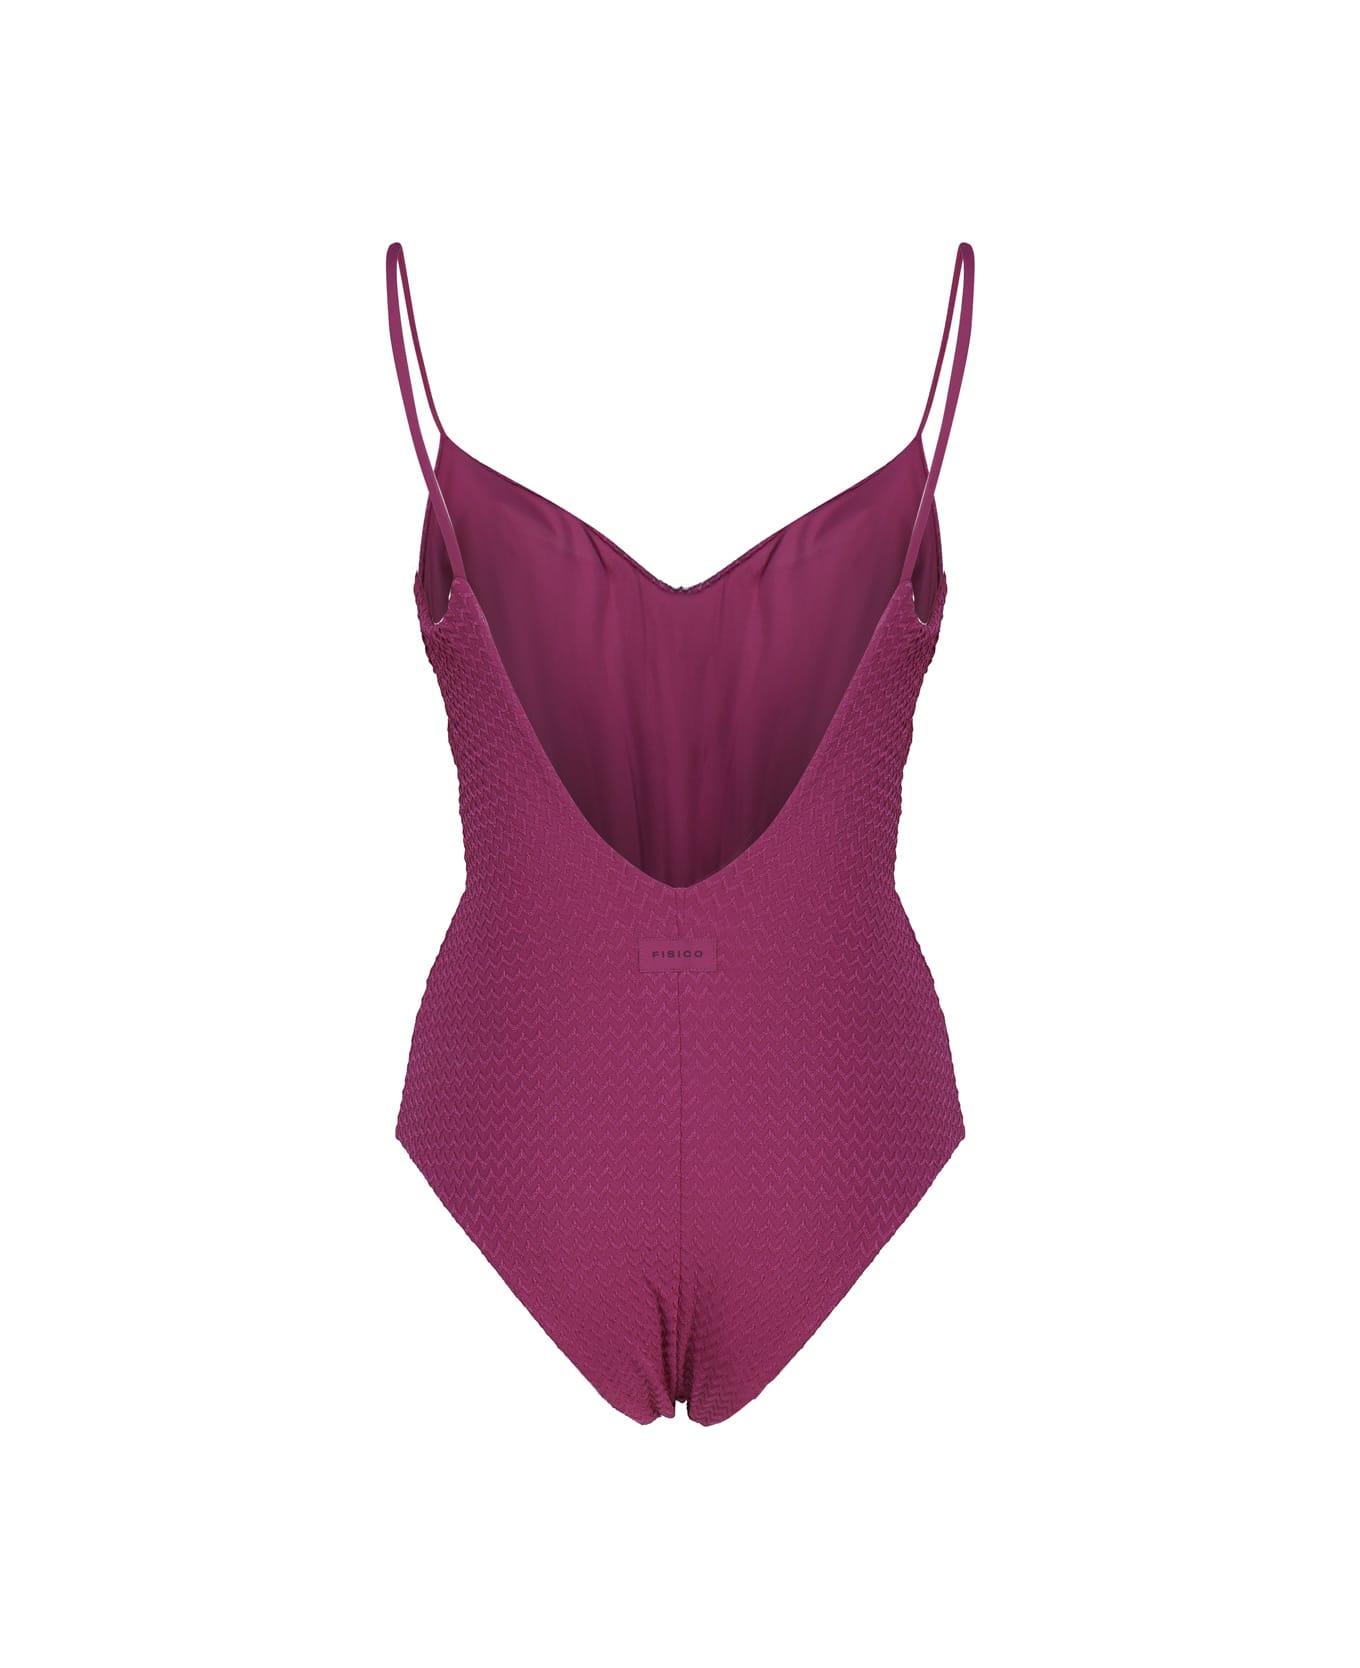 Fisico - Cristina Ferrari Solid Color One-piece Swimsuit - Sangria